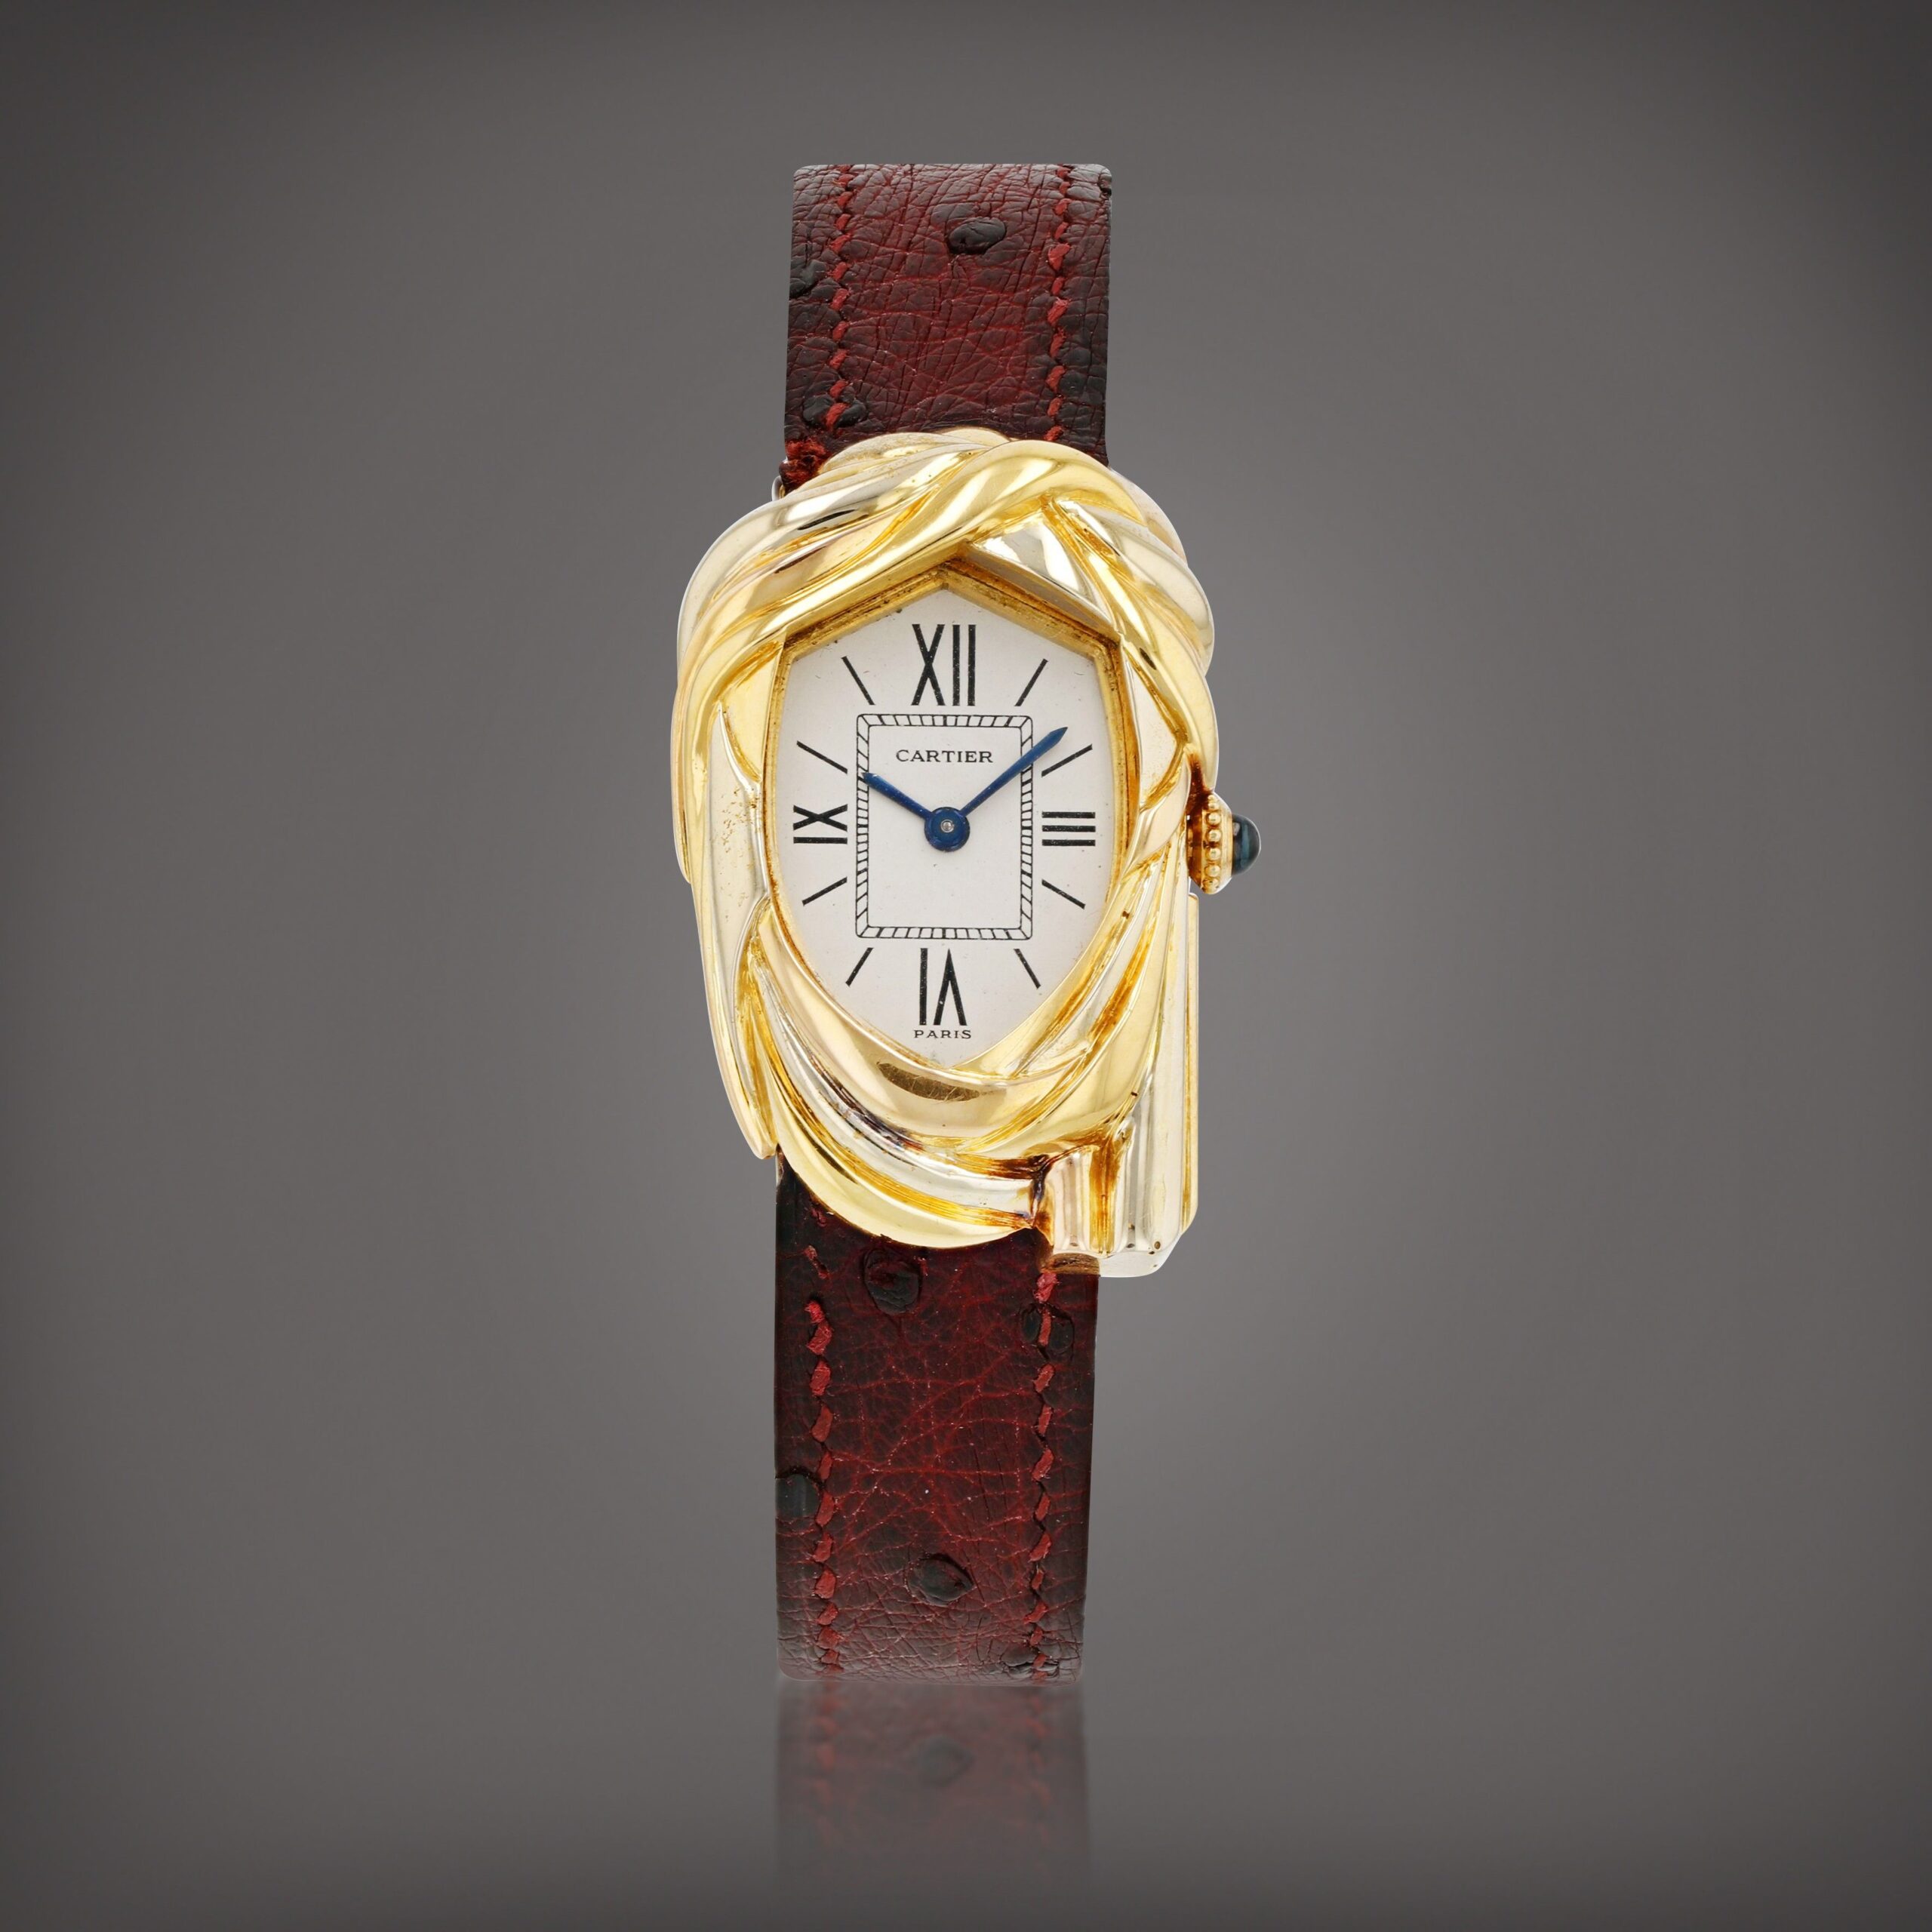 Lo spirito della Parigi-Dakar in un orologio. Più di 1 milione € per il leggendario Cartier Cheich da Sotheby’s